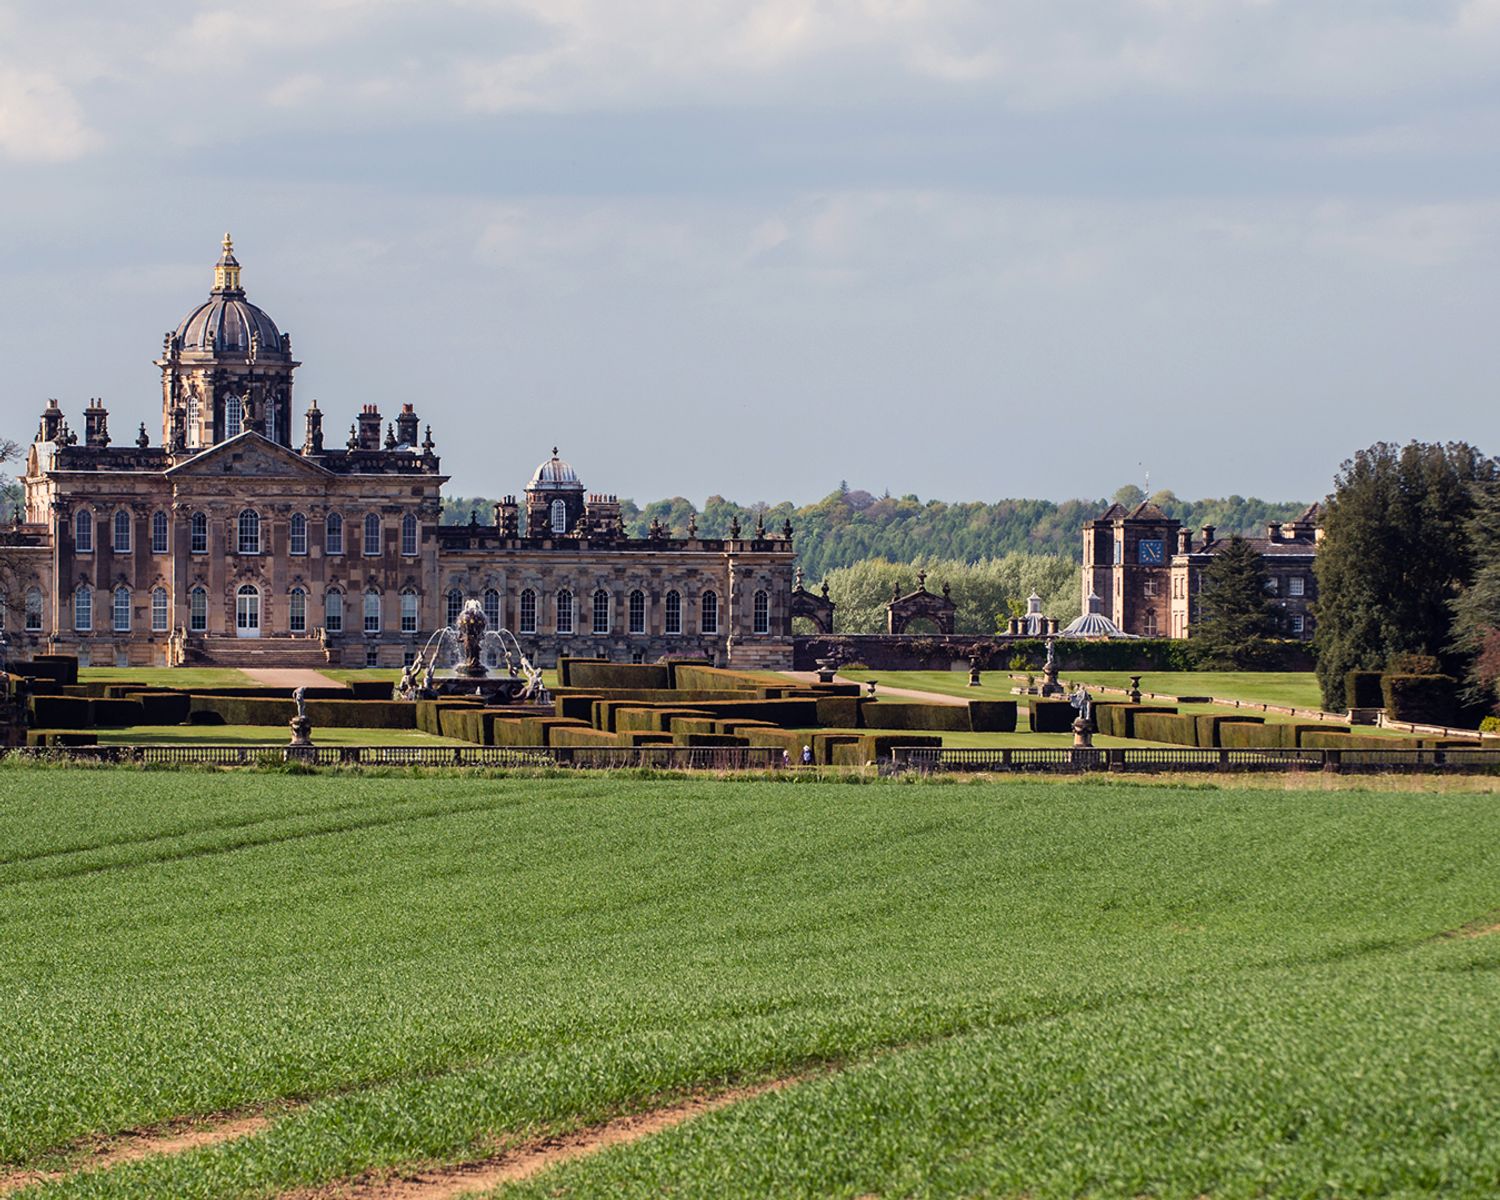 A view towards Castle Howard estate across a field